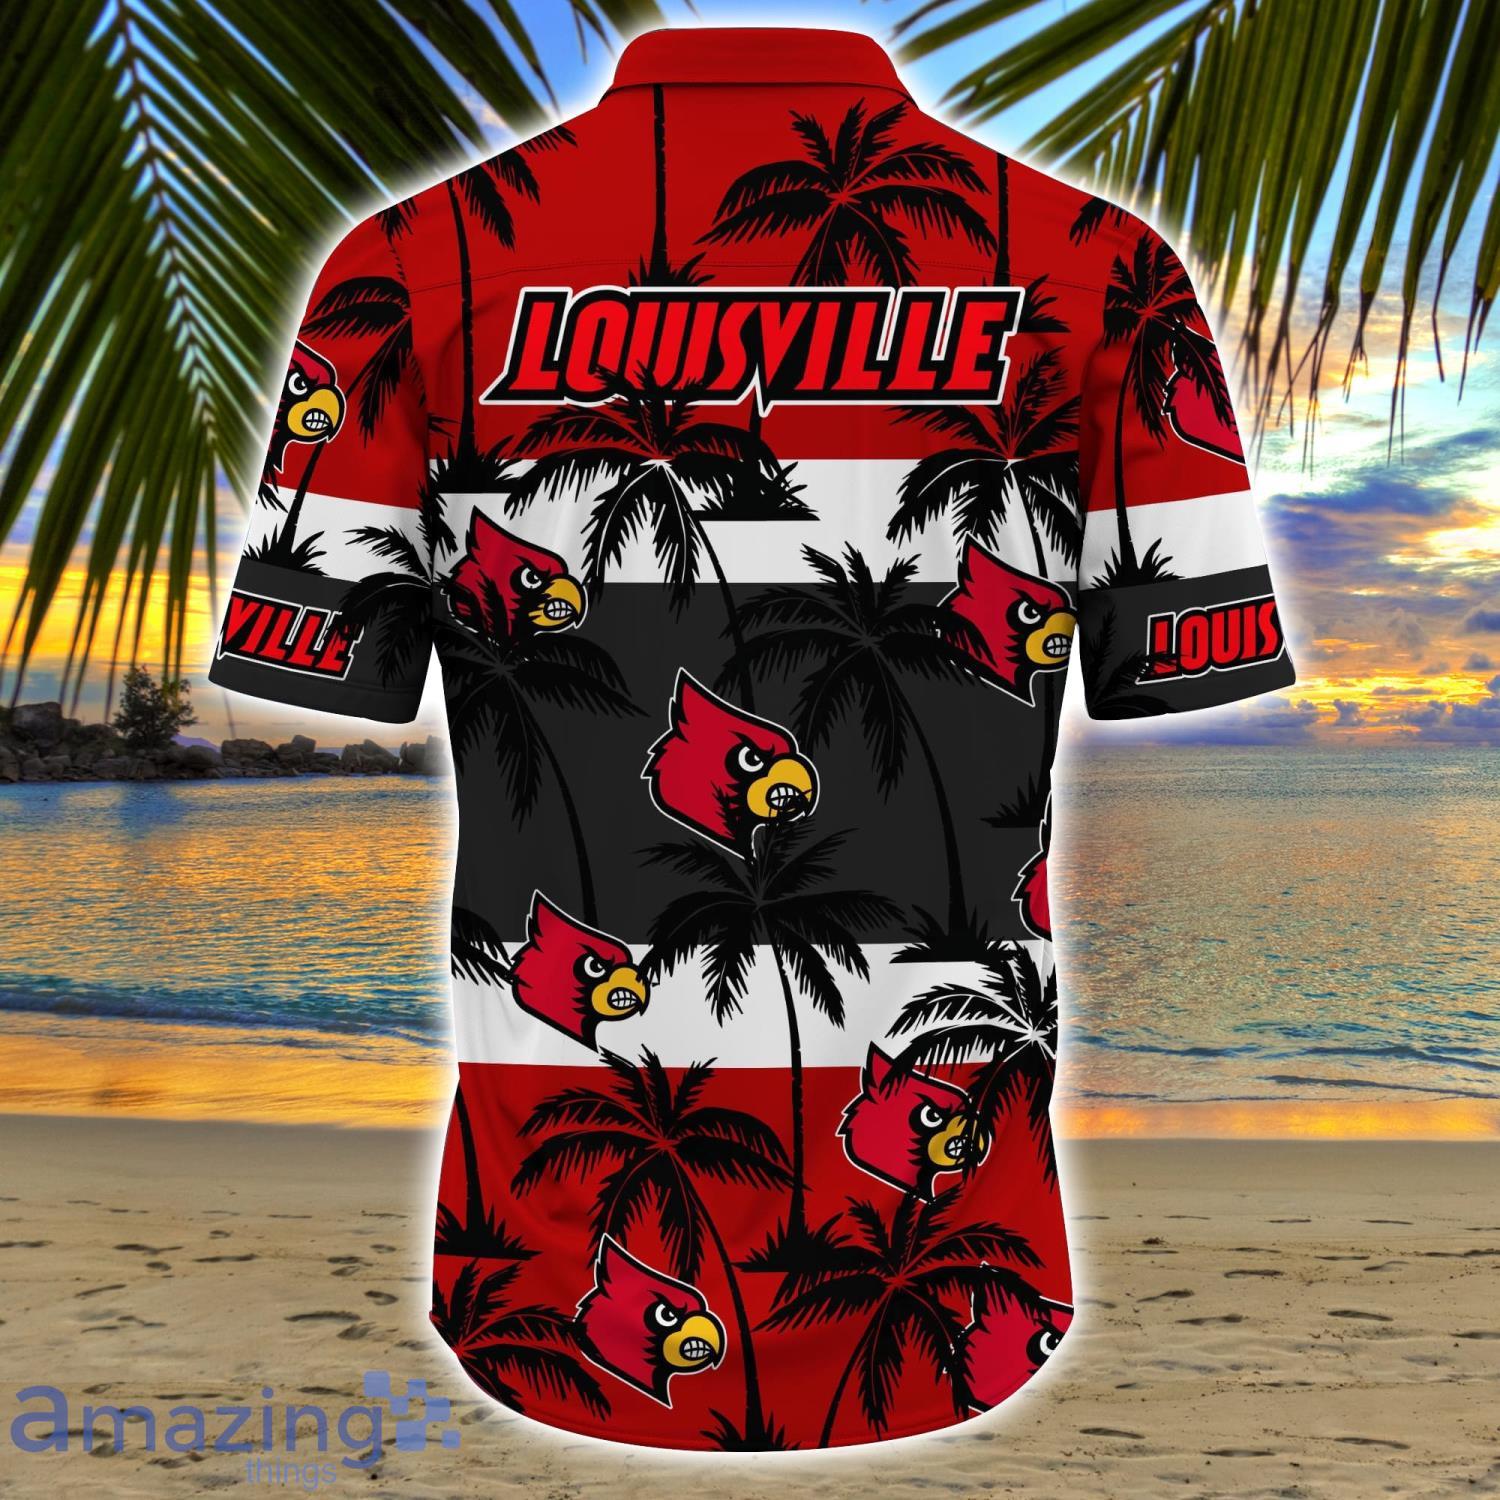 louisville cardinals baseball shirt